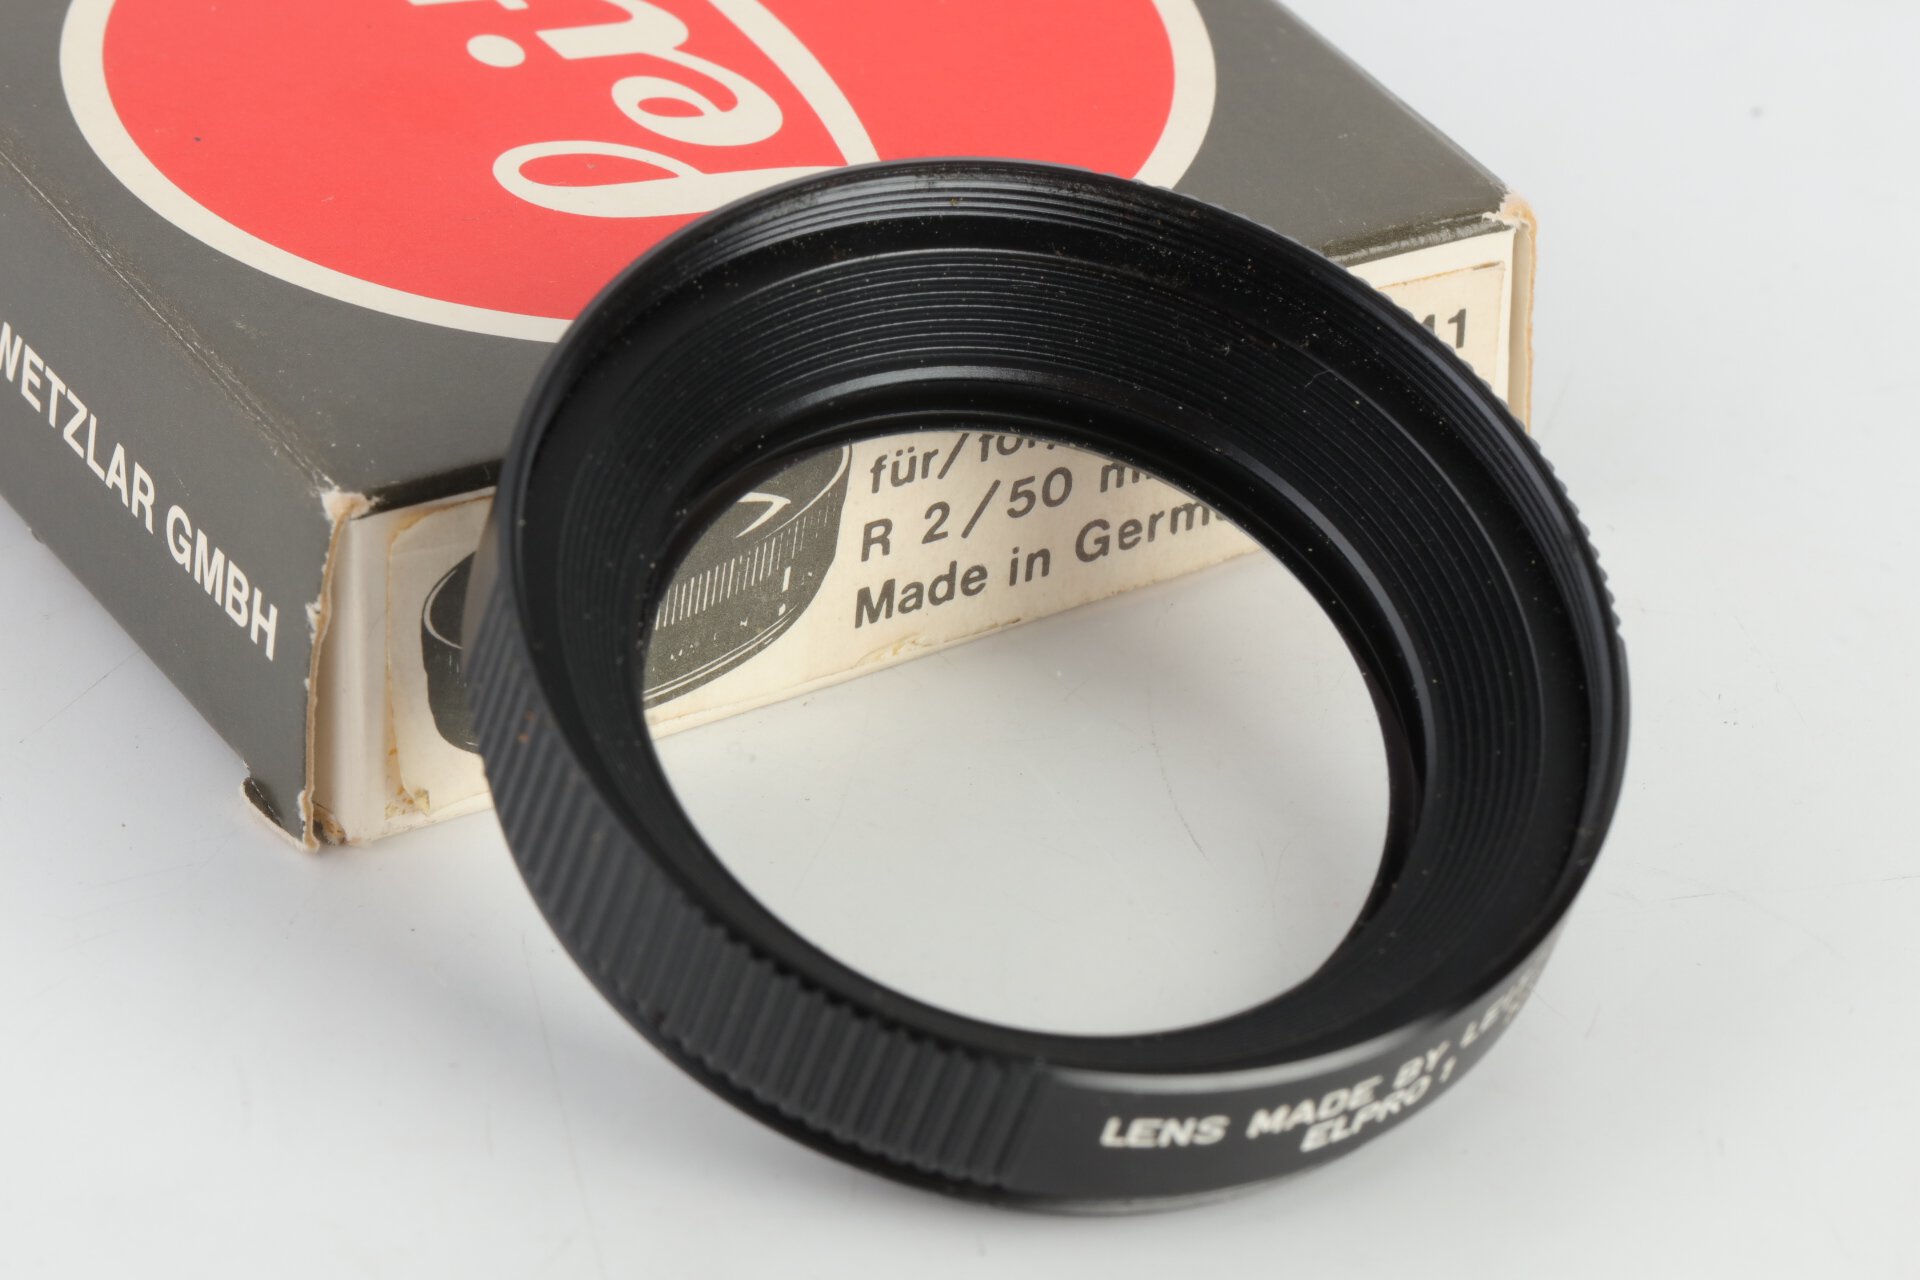 Leica Elpro 1 Vorsatzlinse für R 2/50mm 16541